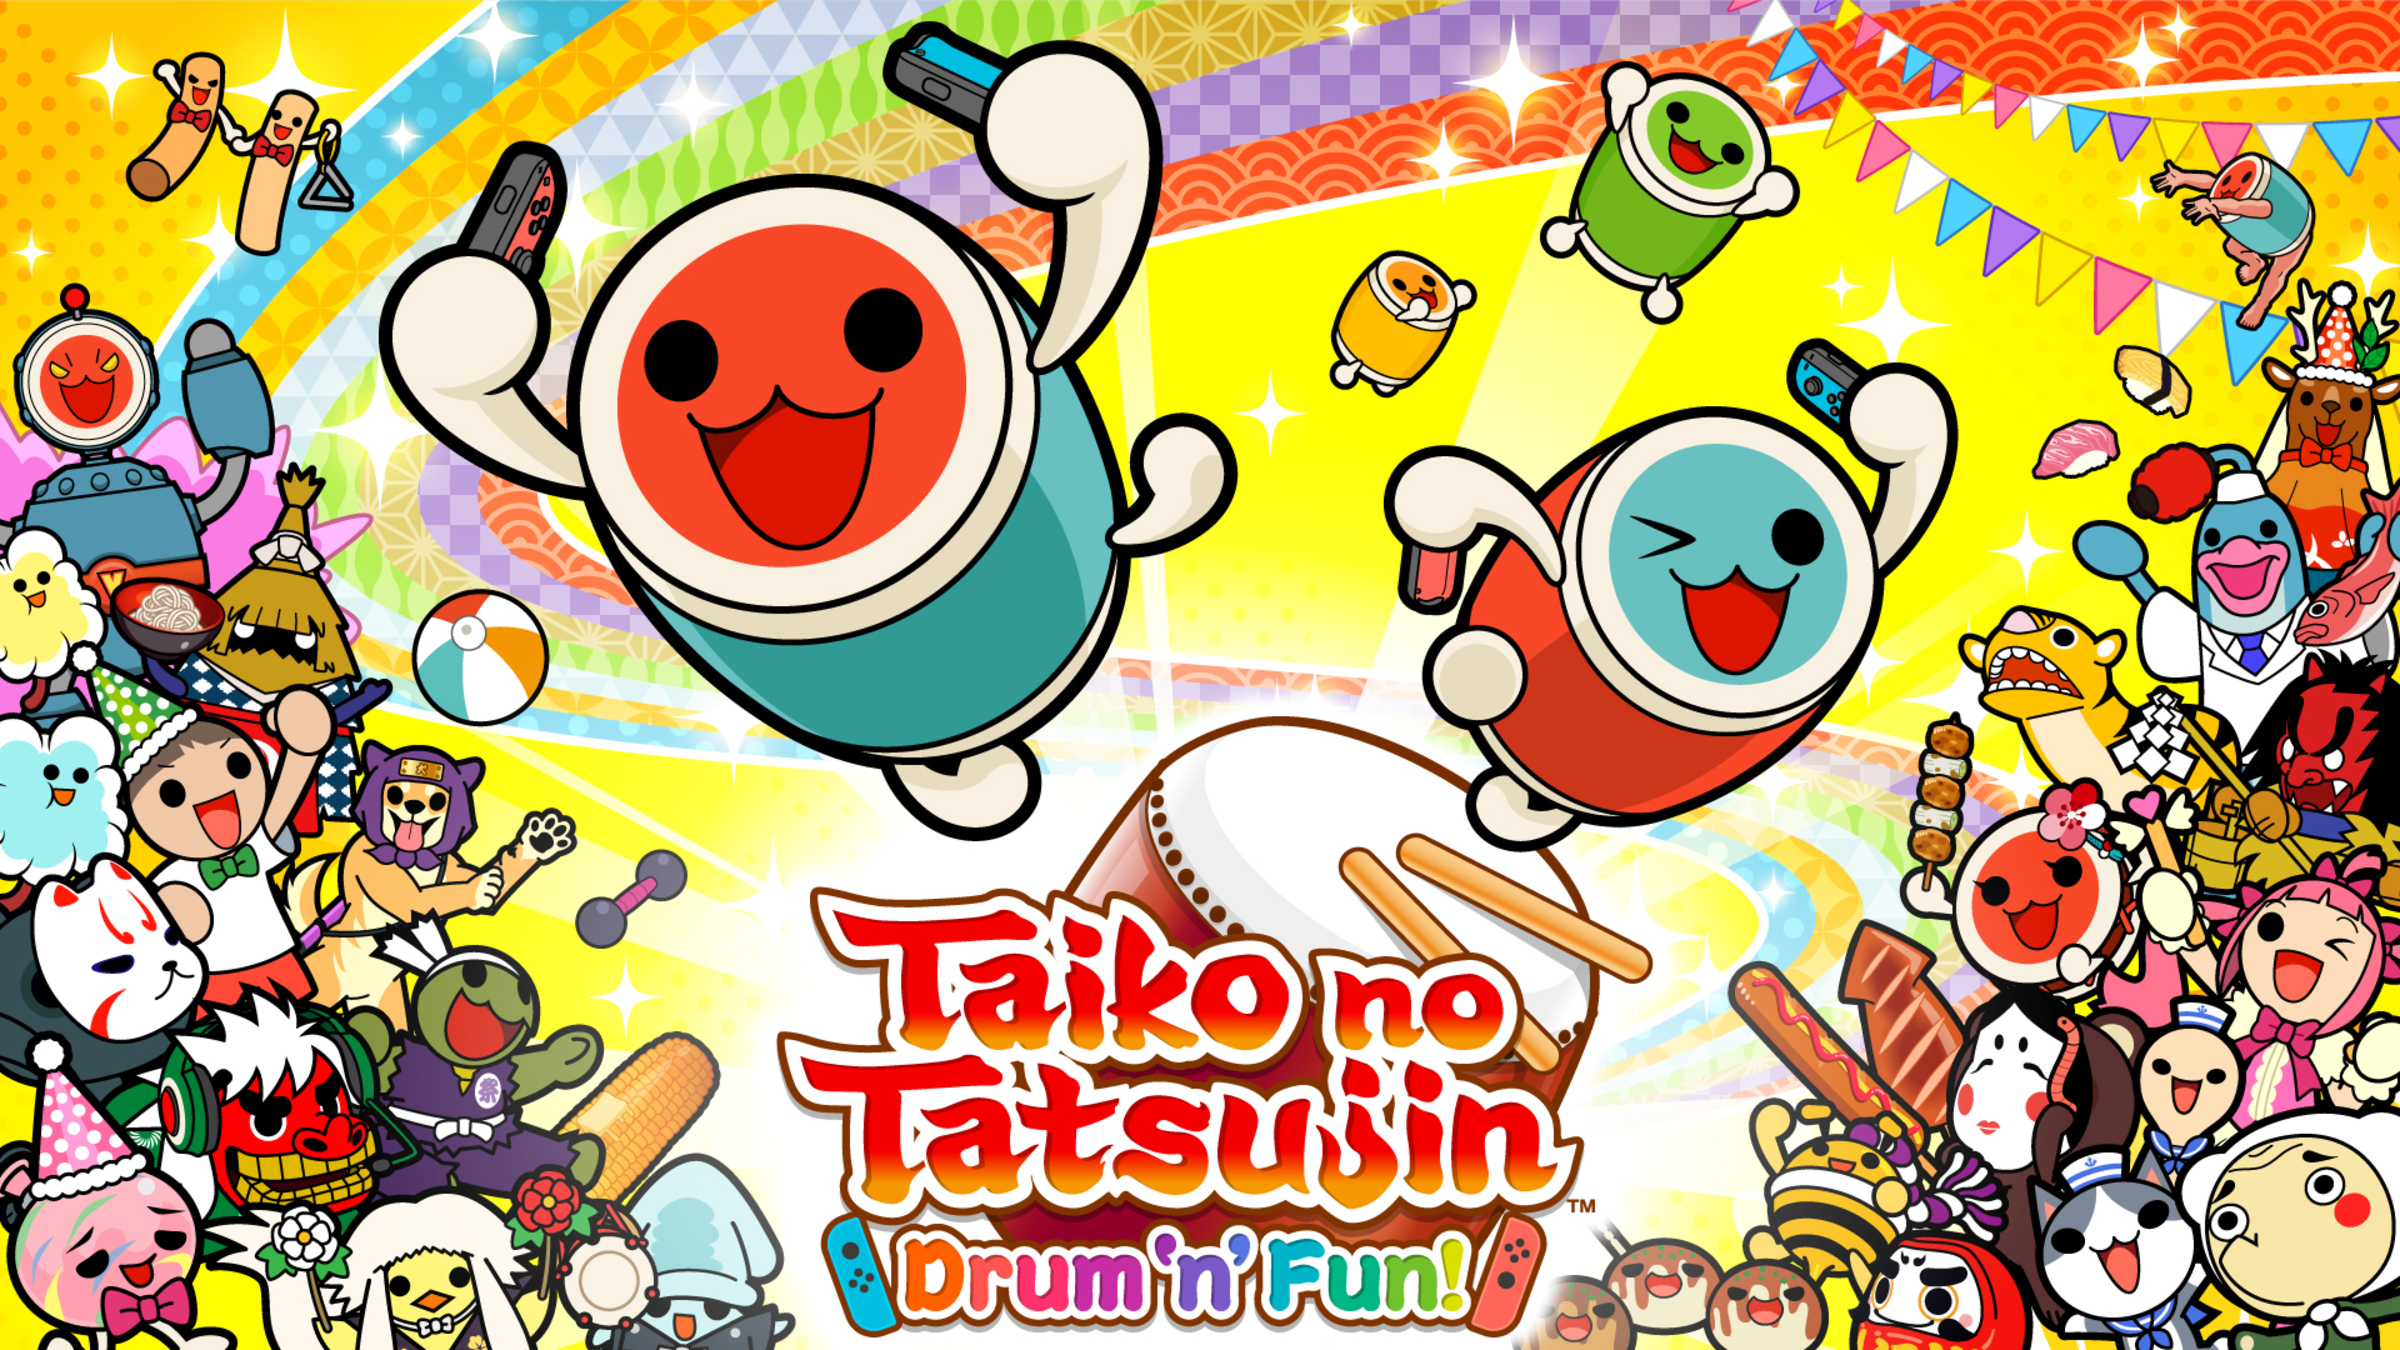 Taiko no Tatsujin: Drum 'n' Fun! for Nintendo Switch - Nintendo Official Site